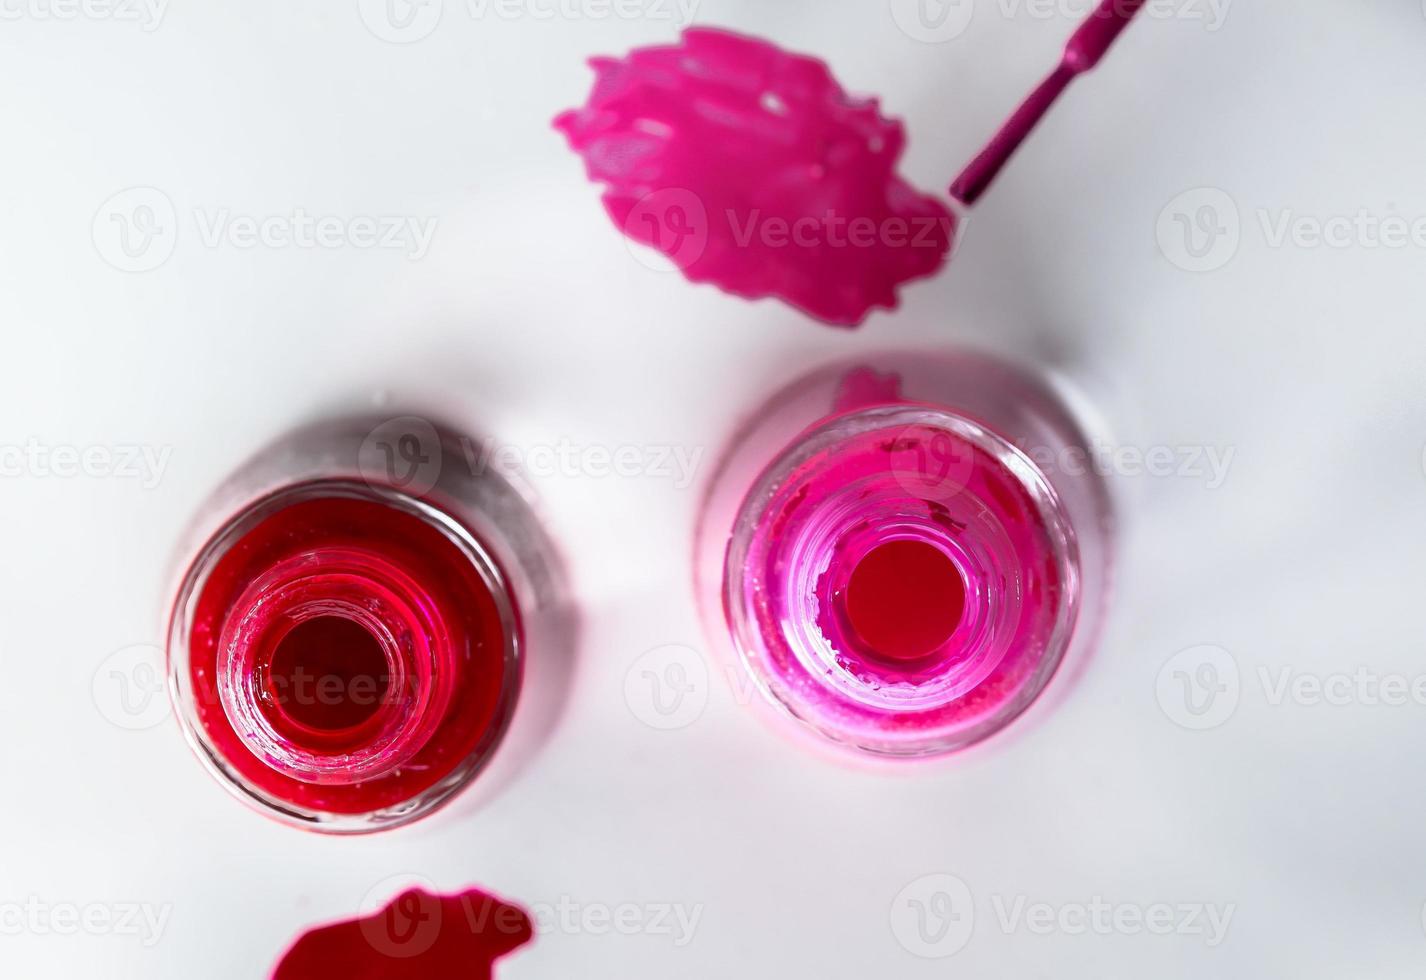 Opened bottles of nail polish on white background photo